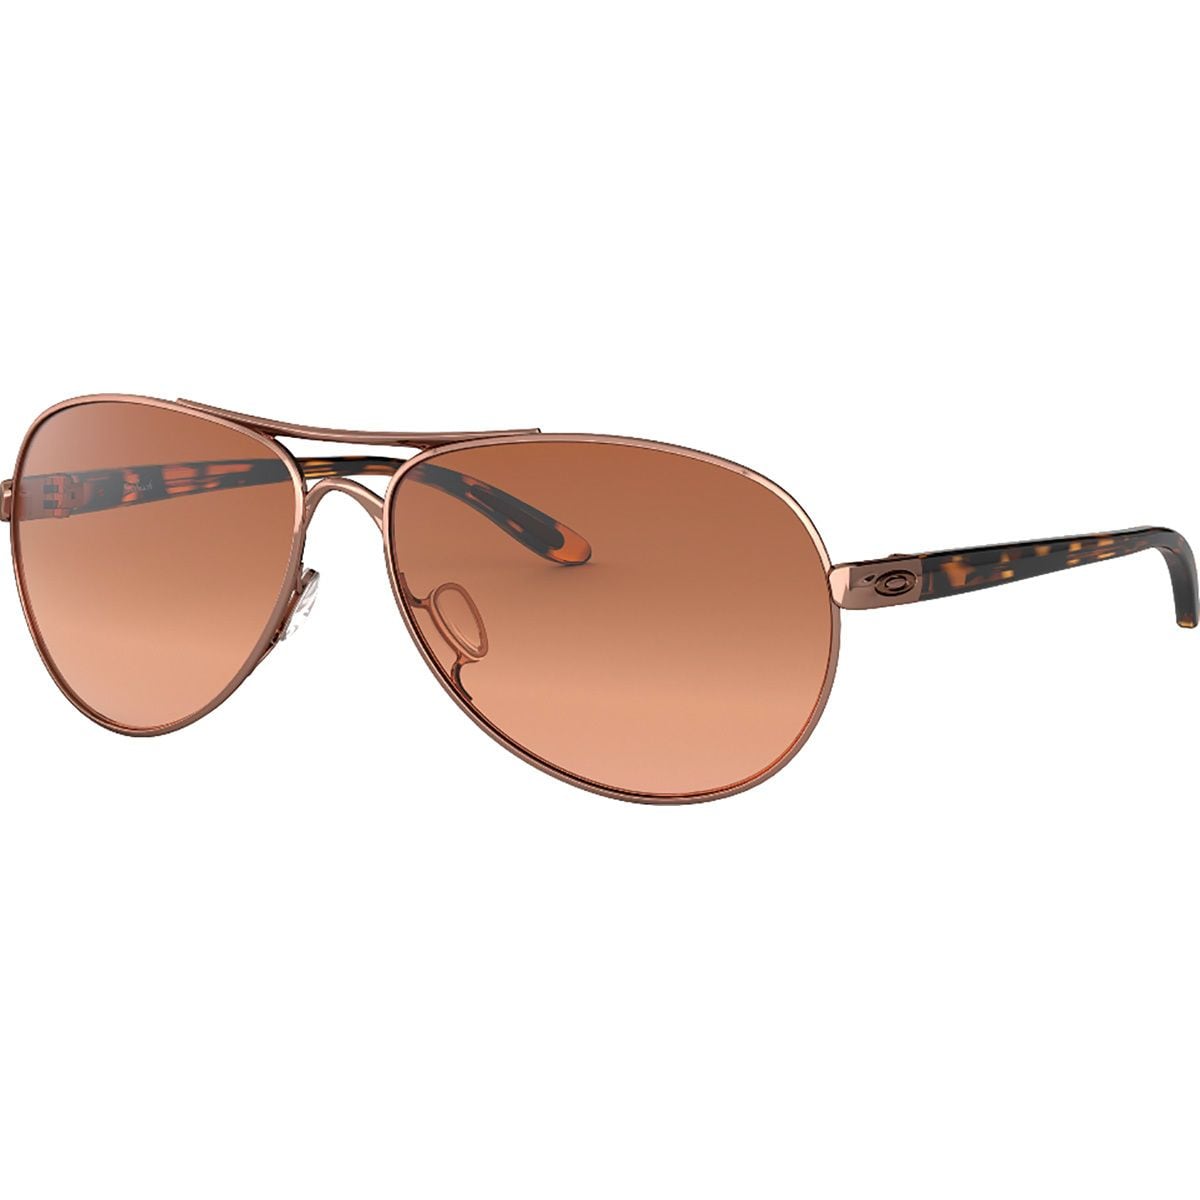 Oakley Feedback Sunglasses - Women's - Accessories